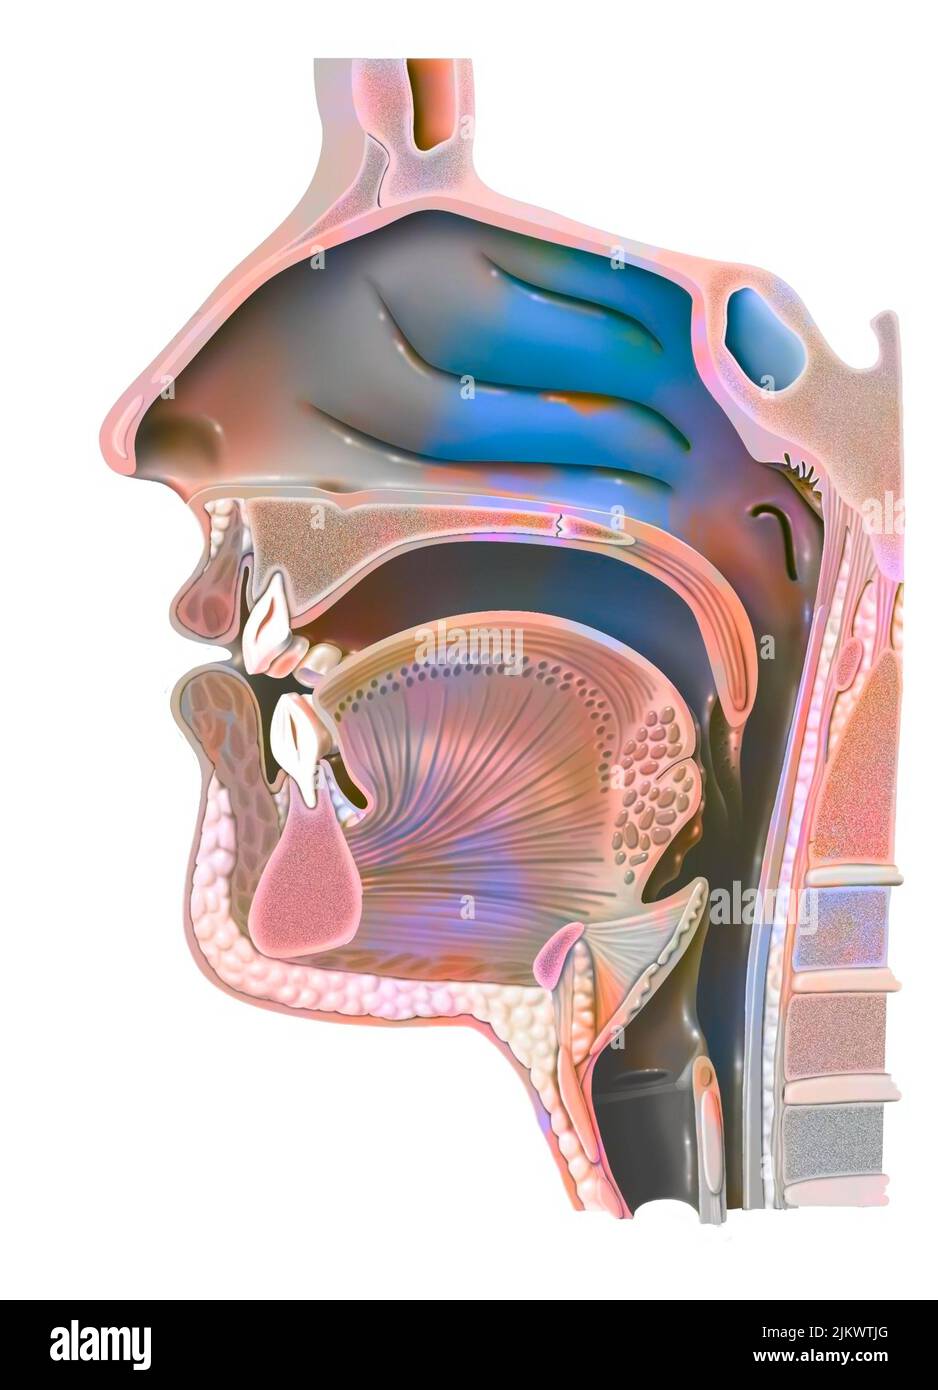 Anatomy of nasopharynx with nasal cavity, oral cavity. Stock Photo